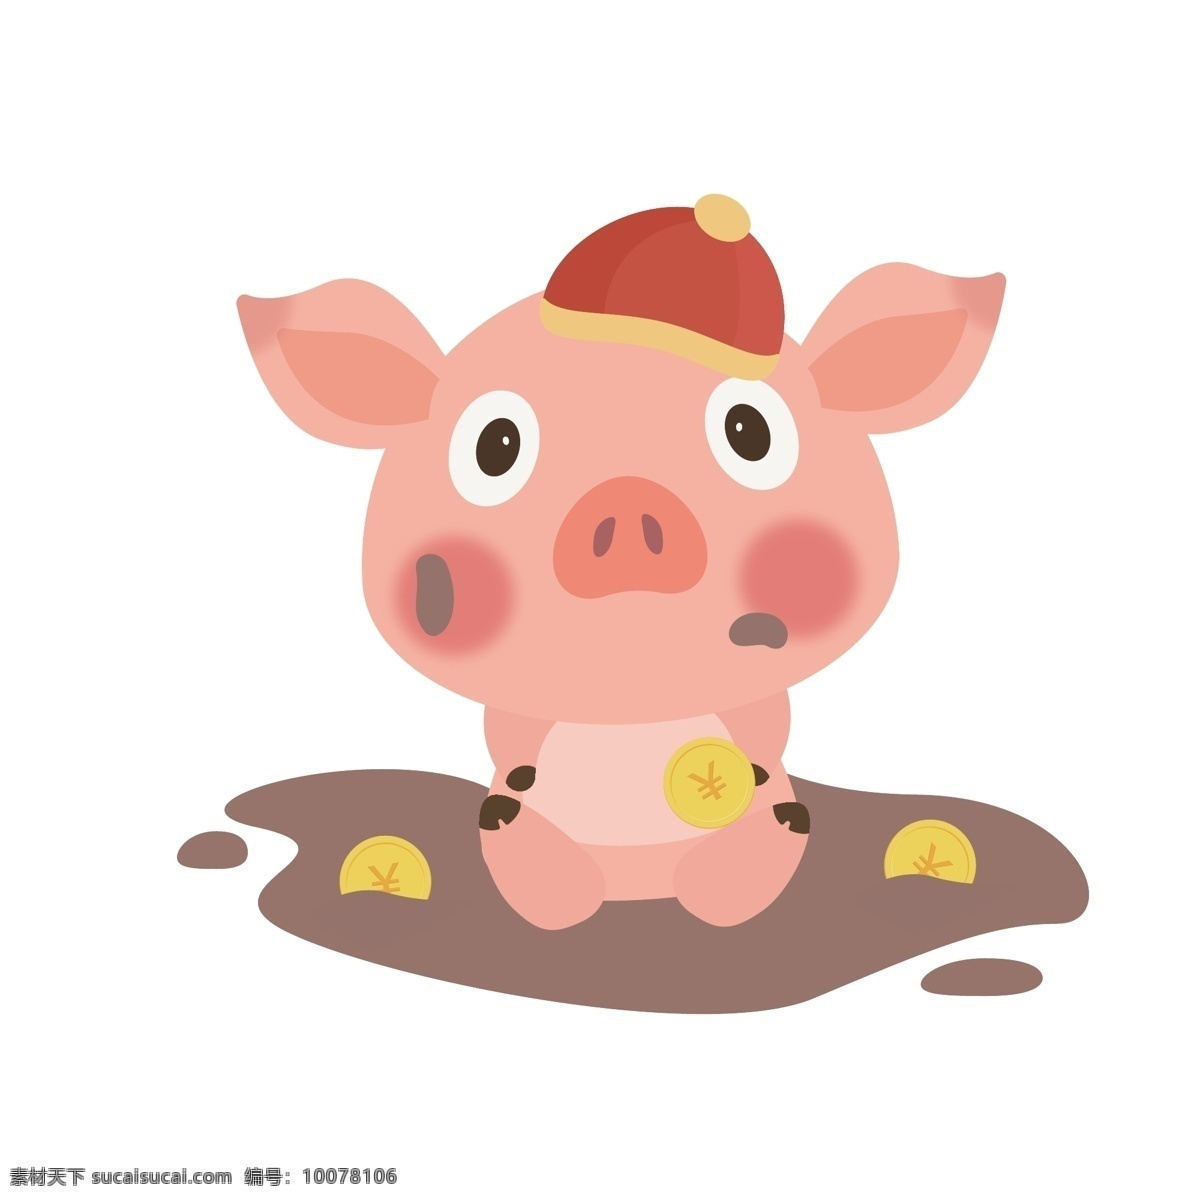 新年 猪年 卡通 矢量 挖 钱 商用 猪 卡通猪 喜庆 硬币 小猪 猪形象 挖钱 泥巴 脏 发财